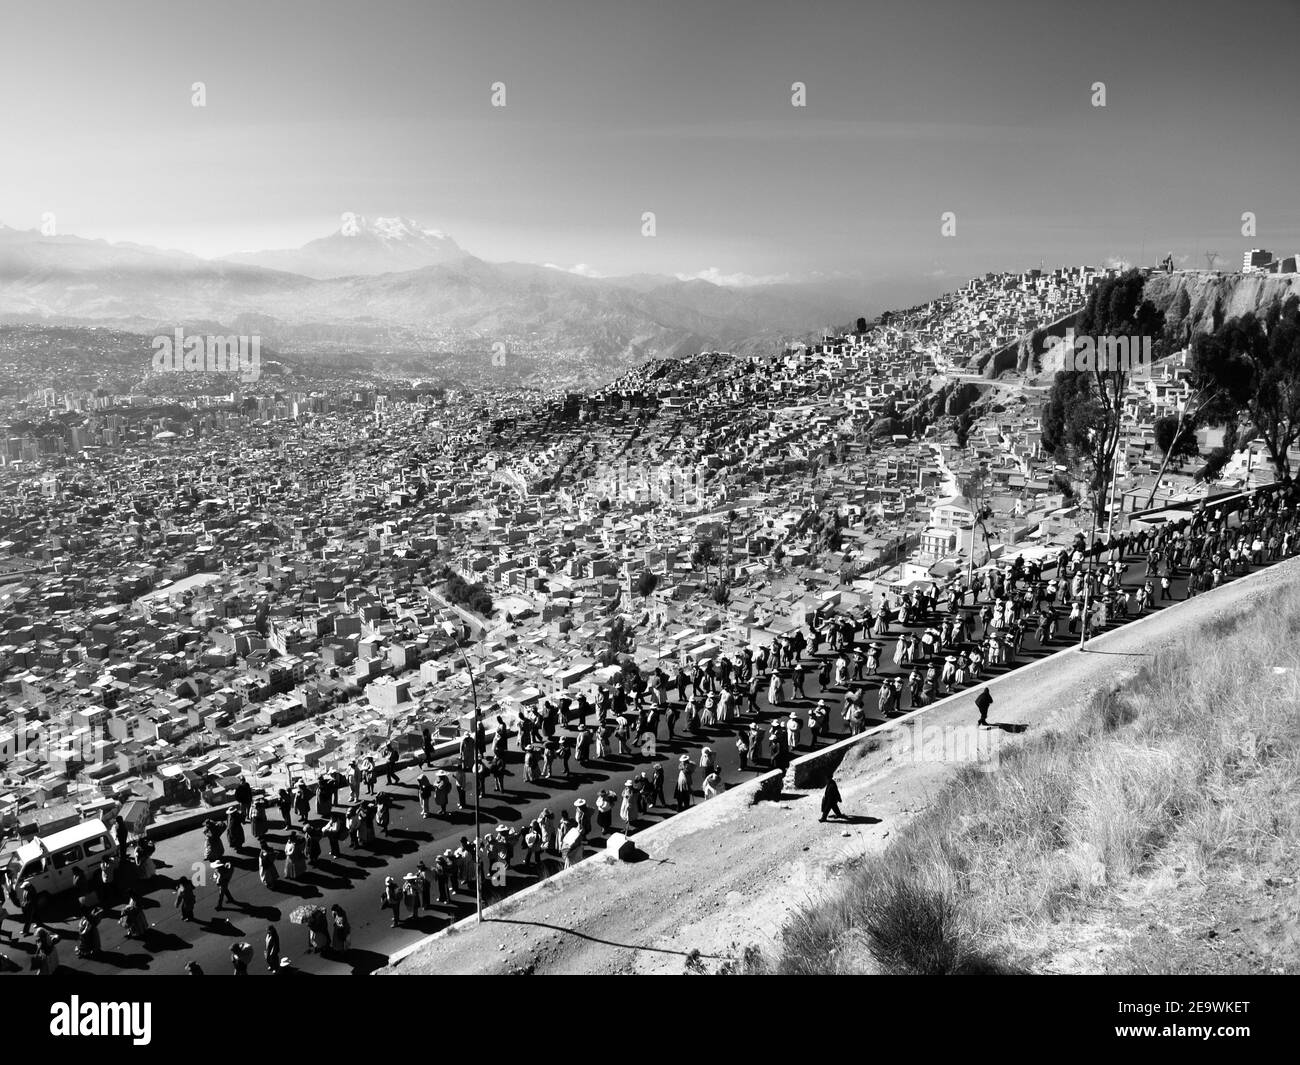 Manifestation dans les paysages de la Paz, Bolivie. Image en noir et blanc Banque D'Images